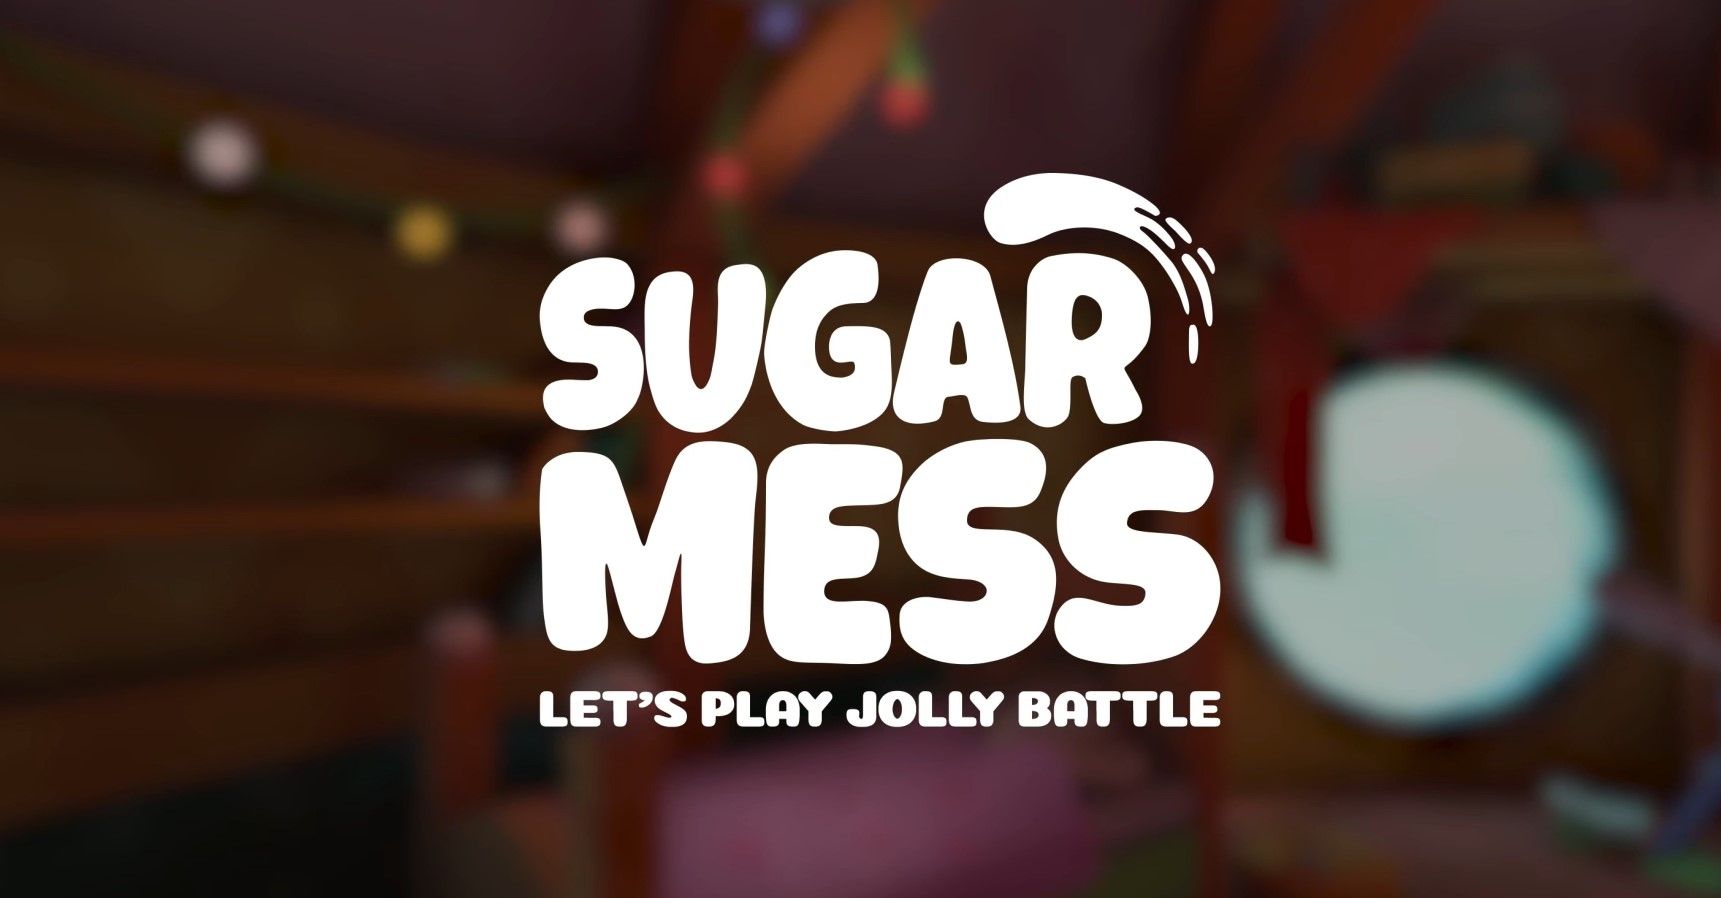 Сладкий хаос начинается: Играем в веселую битву с сахарным беспорядком!